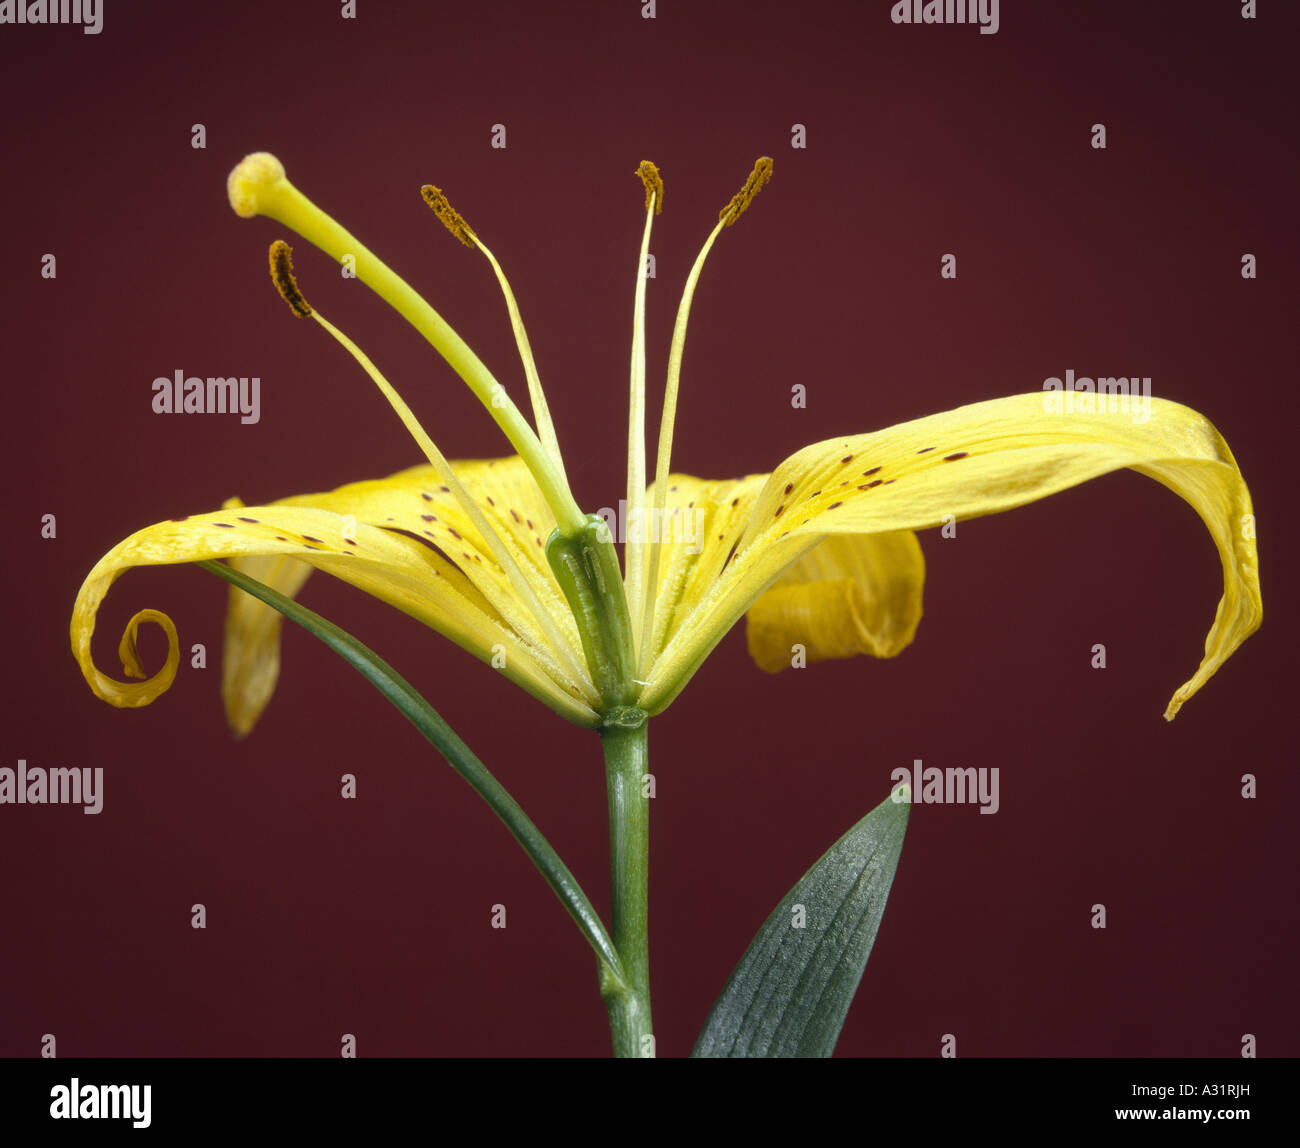 Las partes de la flor de lirio (Lilium sp.) Muestra el pistilo, el estigma,  el estilo, el ovario y óvulos inmaduros / STUDIO Fotografía de stock - Alamy